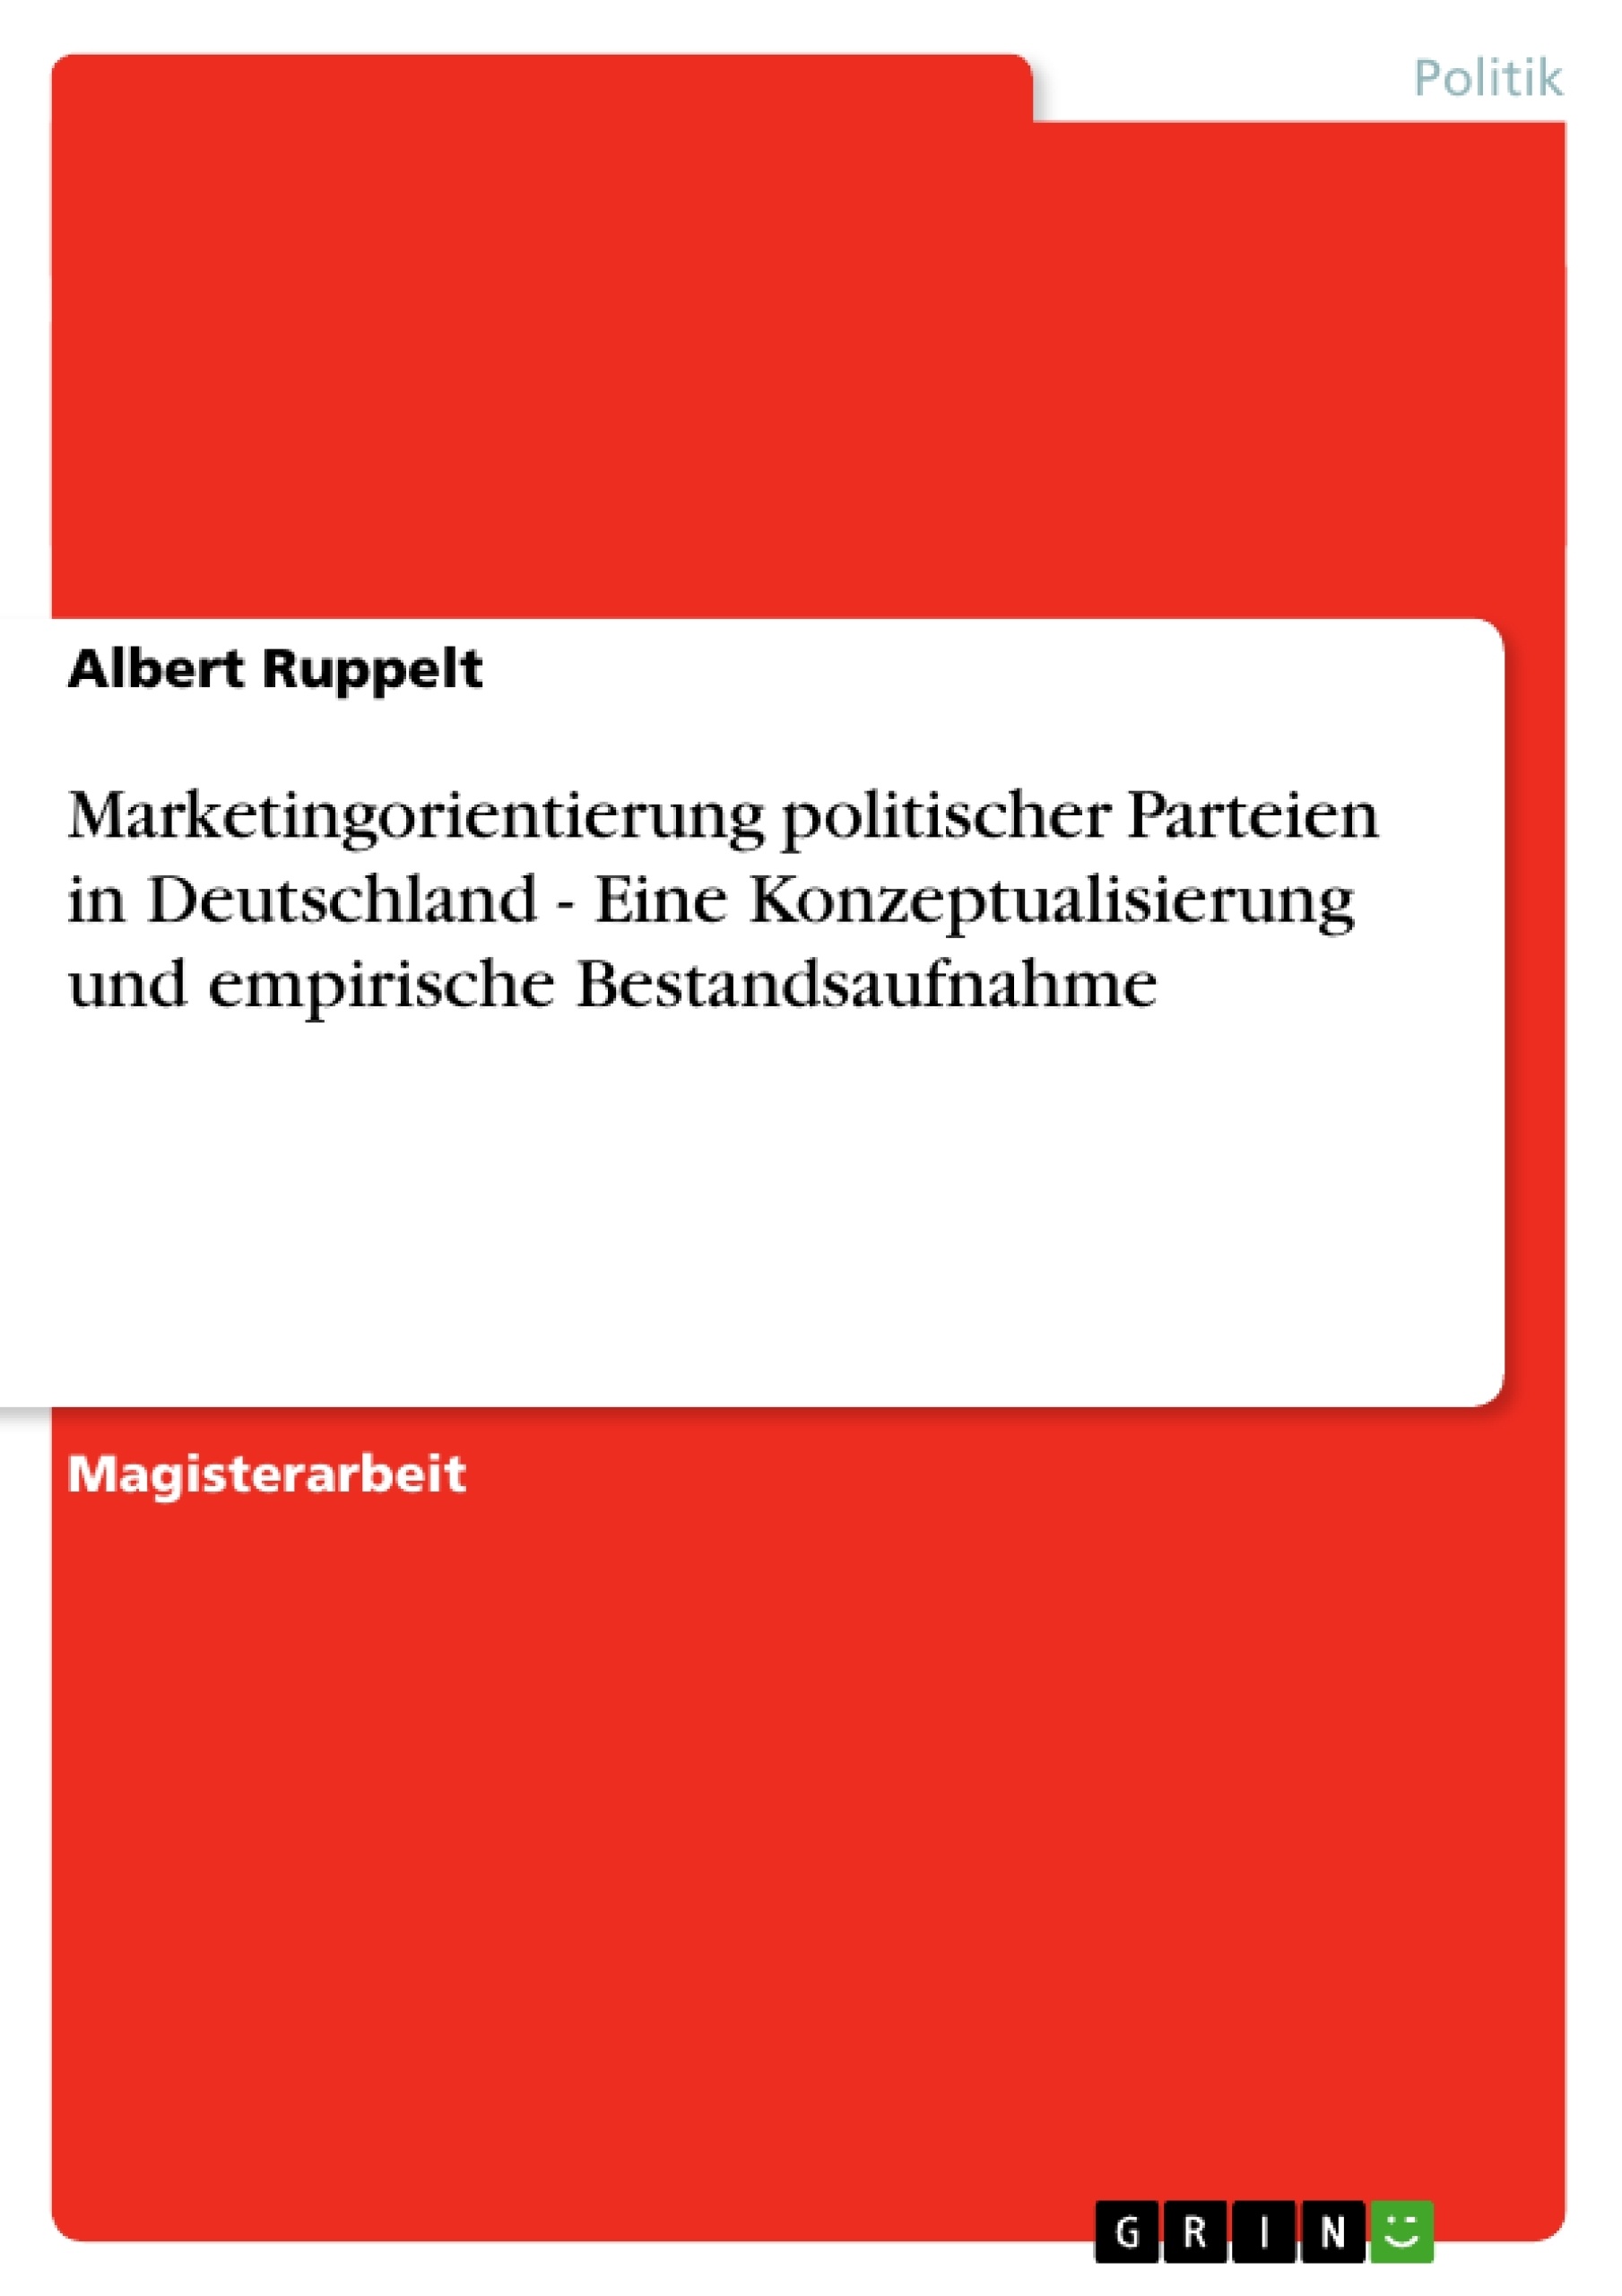 Titel: Marketingorientierung politischer Parteien in Deutschland - Eine Konzeptualisierung und empirische Bestandsaufnahme